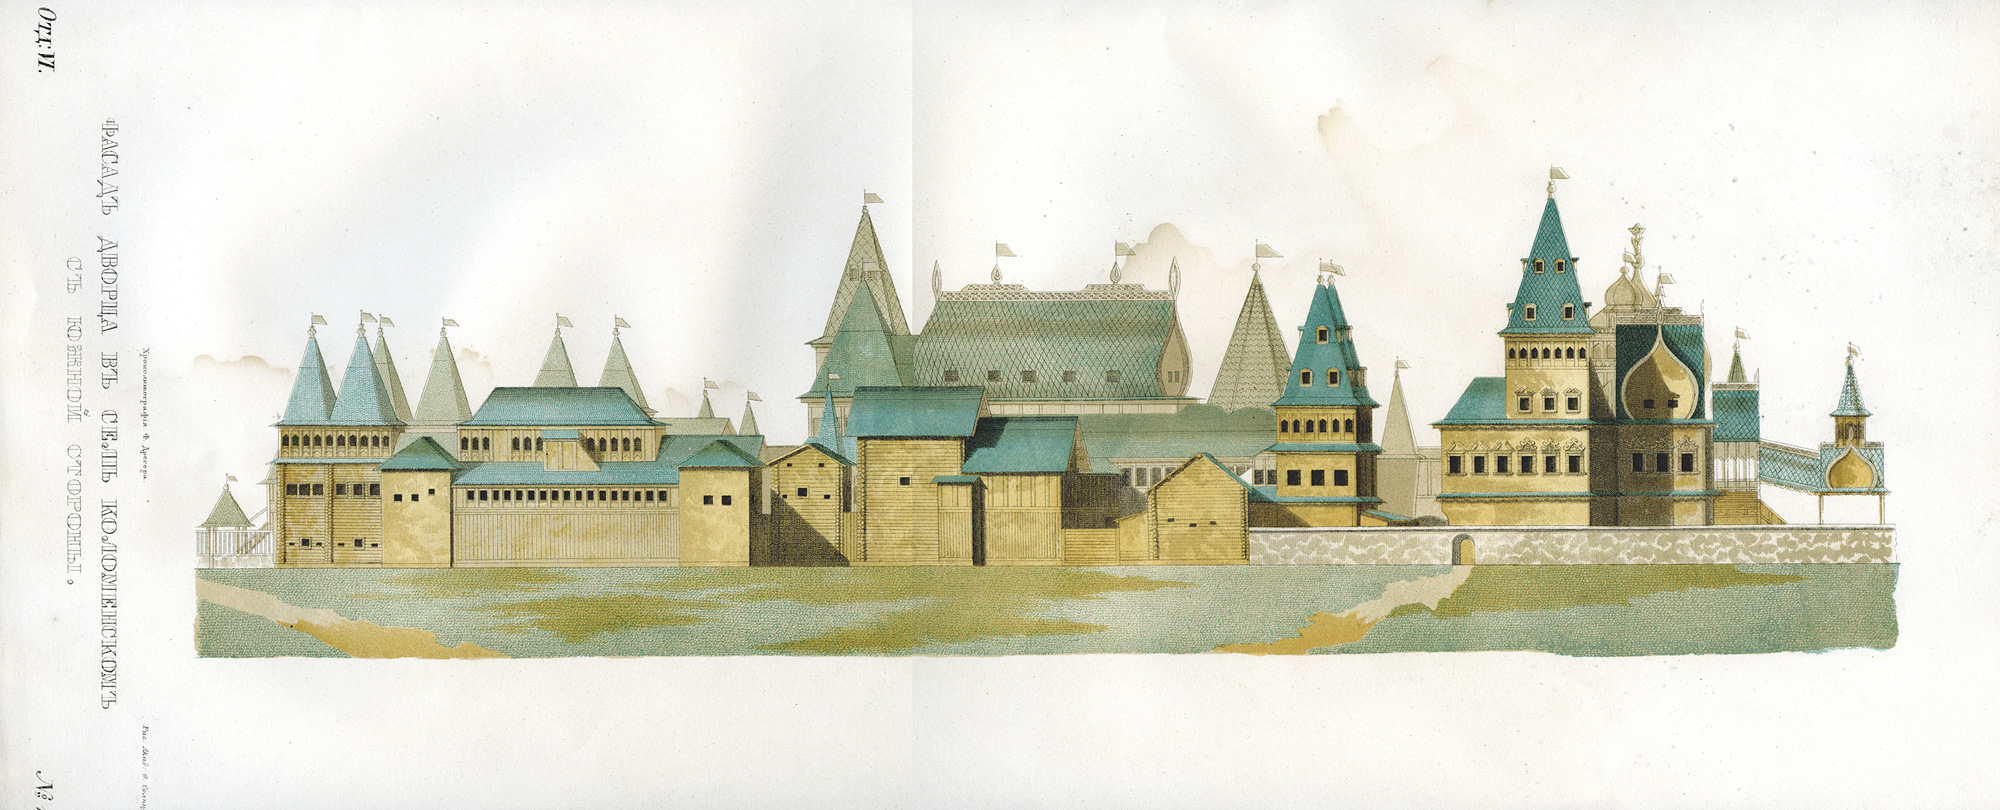 Фасал Коломенского дворца